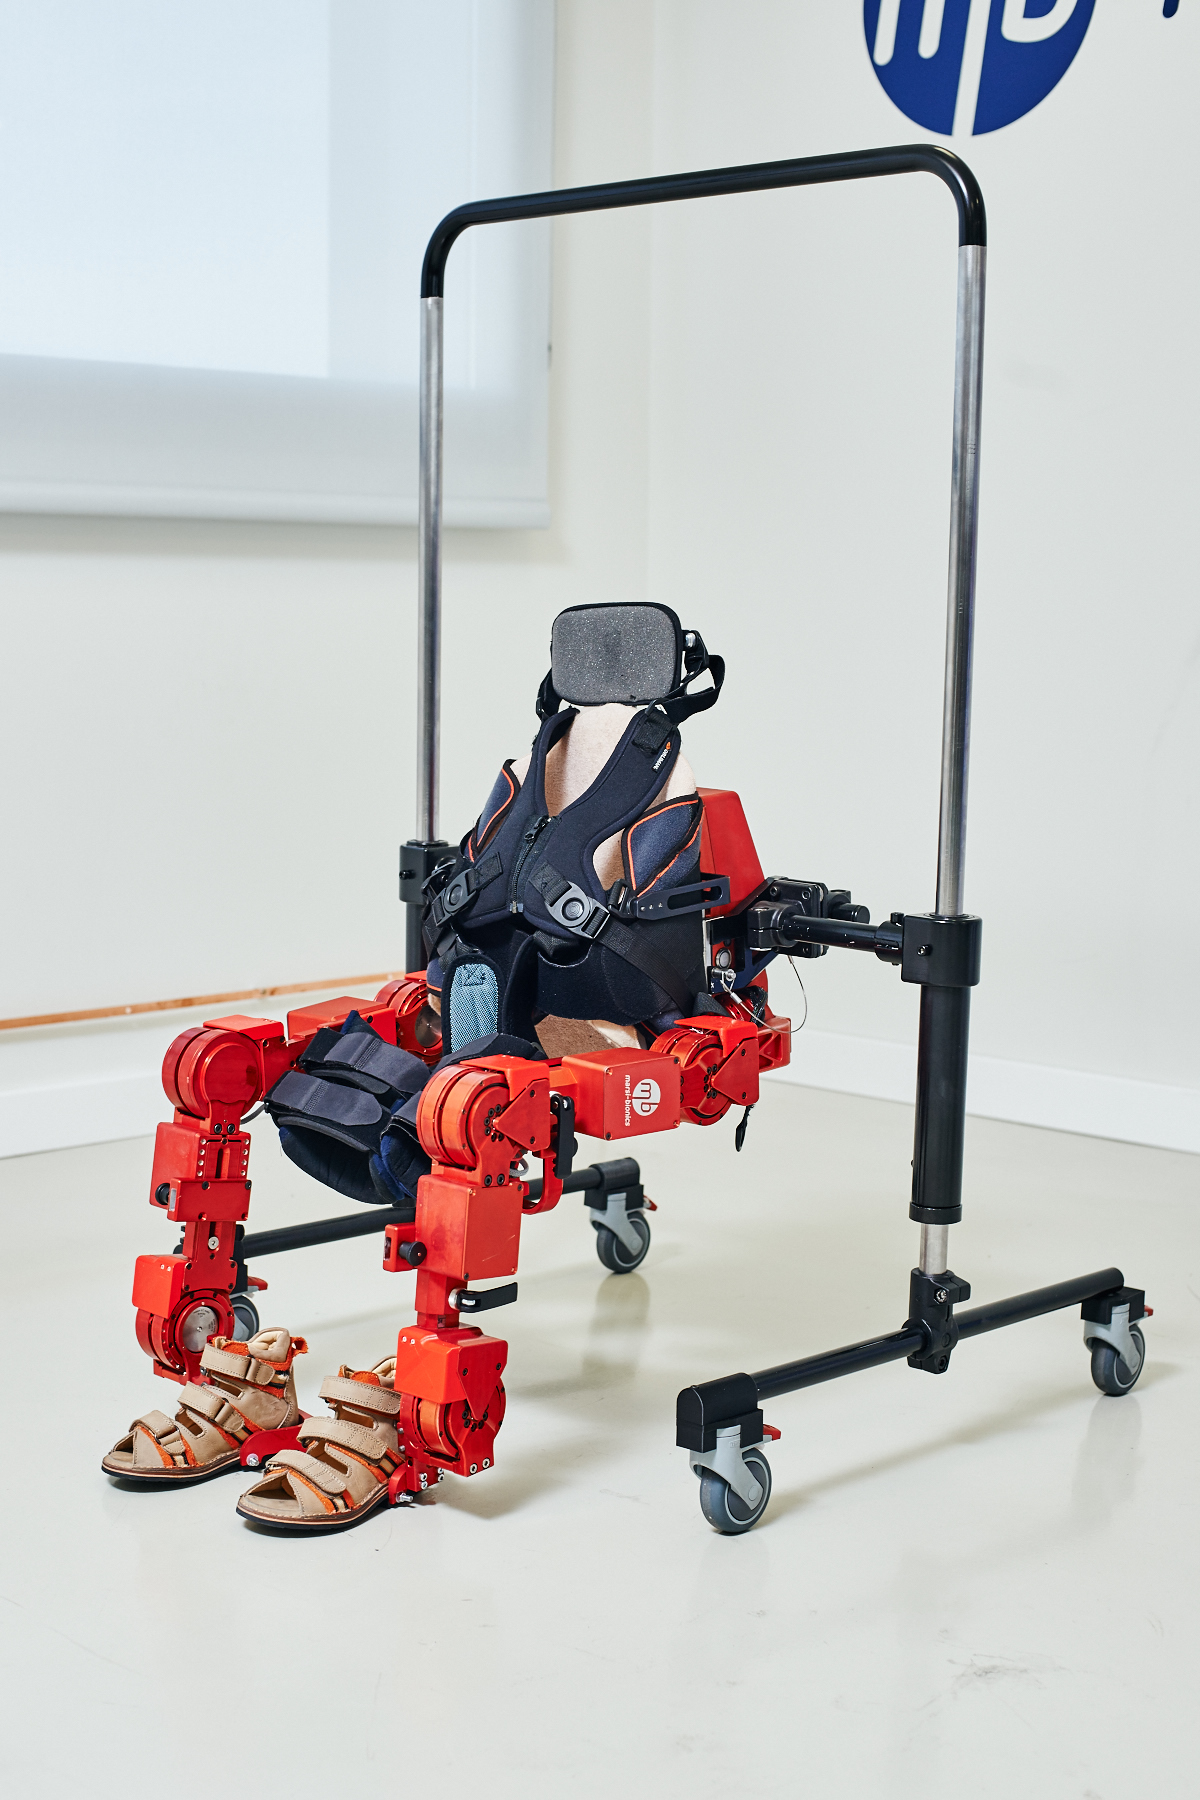 Marsi Bionics' ATLAS 2030 exoskeleton for children